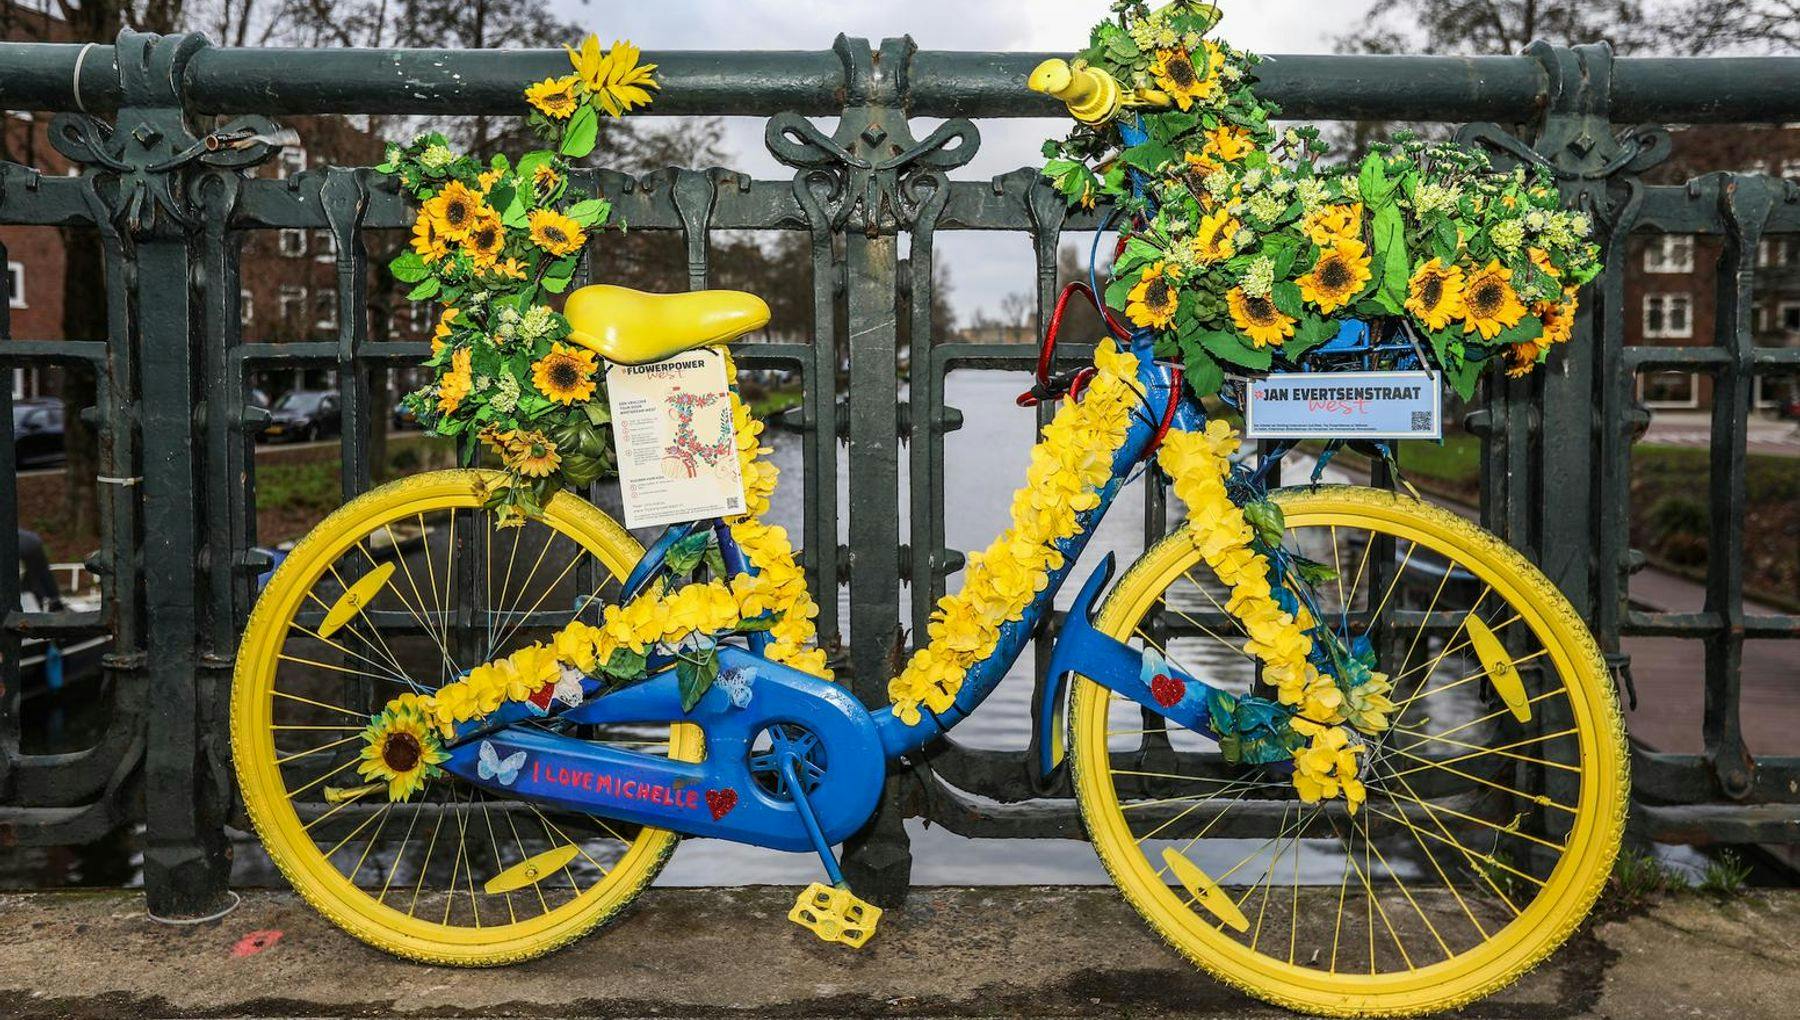 Flowerpower West, Flowerbikeman's bikes with flowers